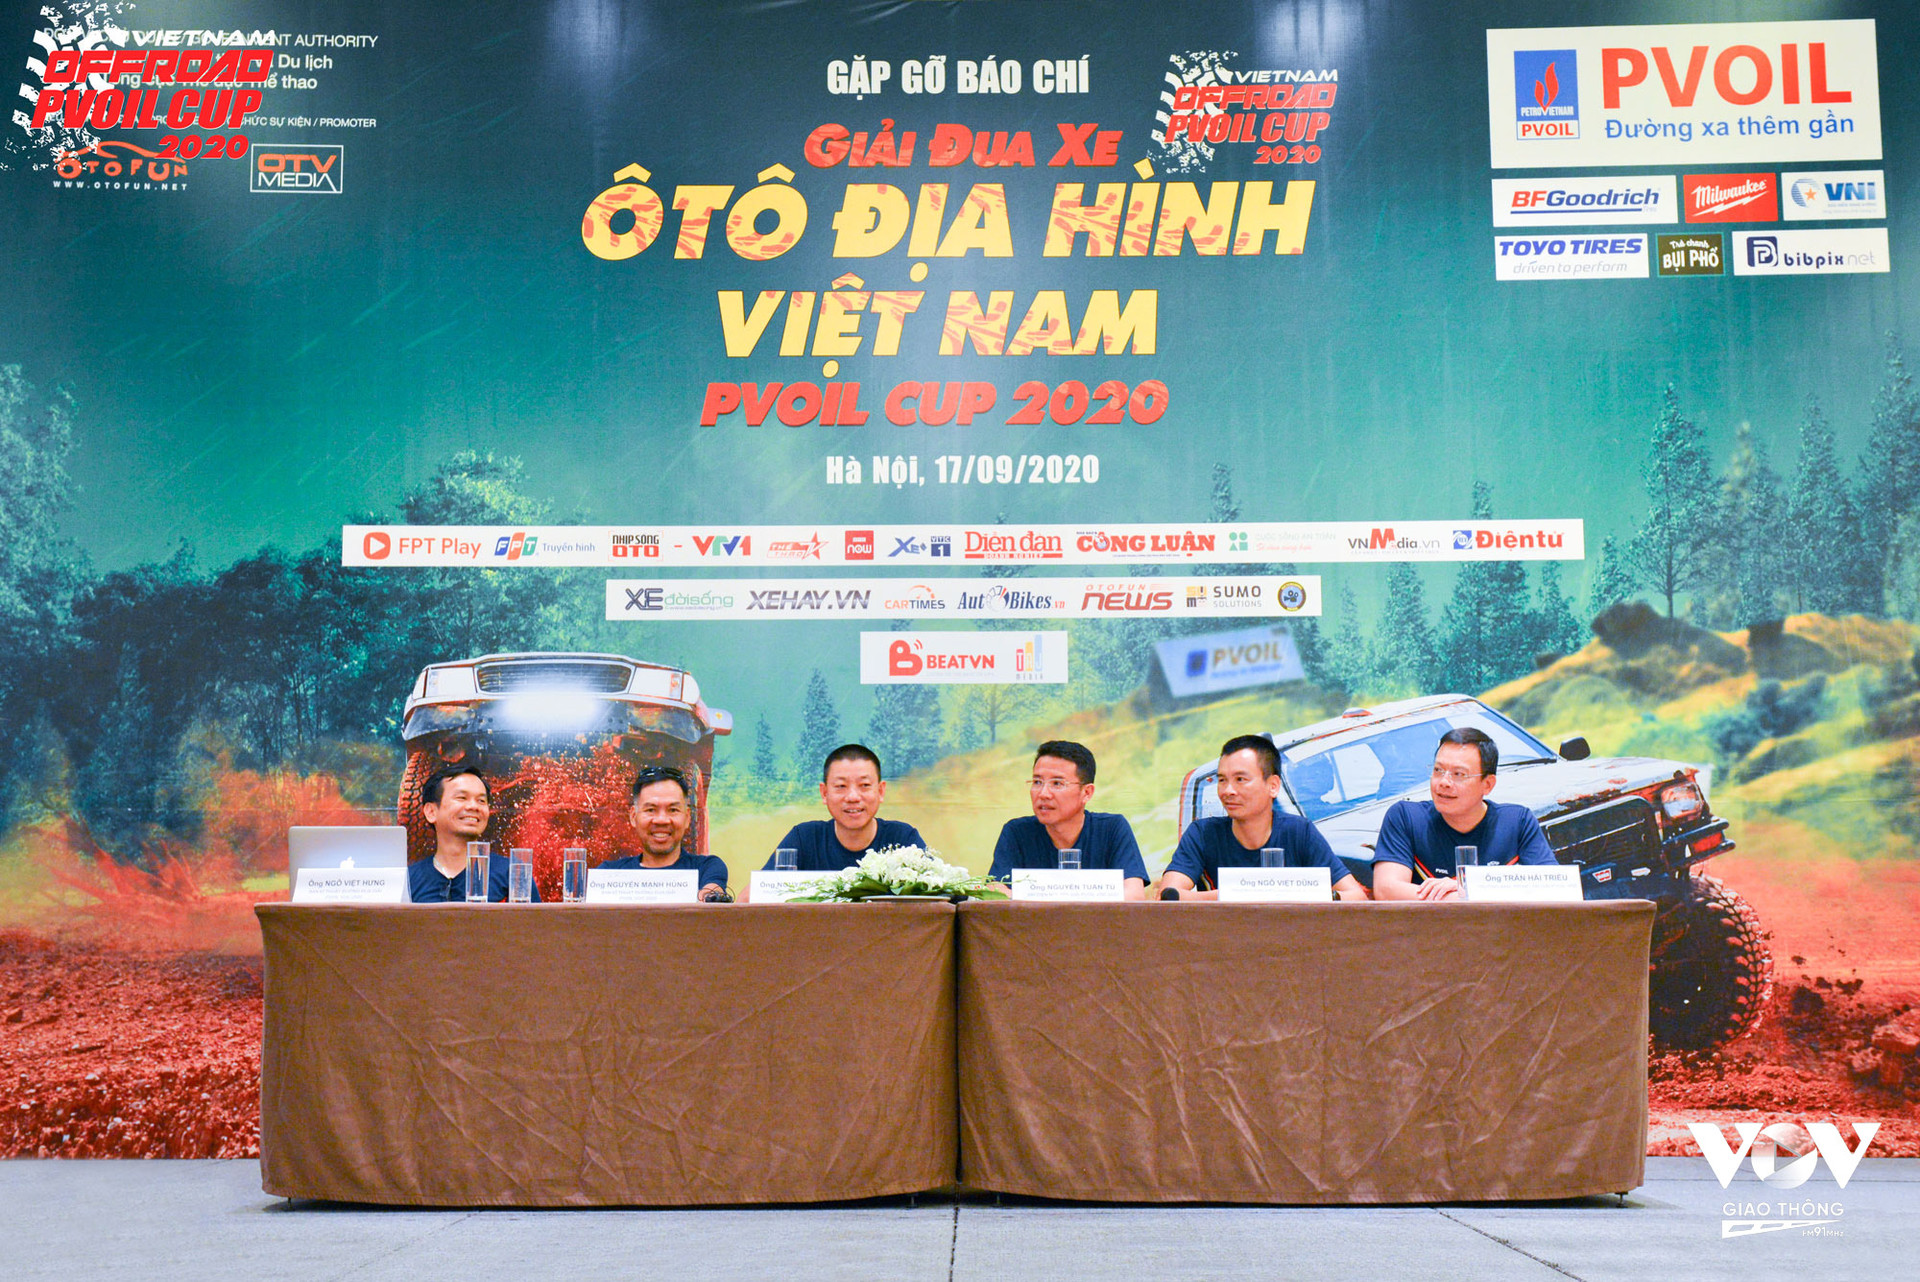 (Theo ông Nguyễn Đức Hoàng, Trưởng Ban tổ chức giải, Tổng Giám đốc OTV Media: “PVOIL VOC 2020 là giải đua ô tô off-road đầu tiên trong năm nay nên kỳ vọng của các vận động viên rất cao.”)